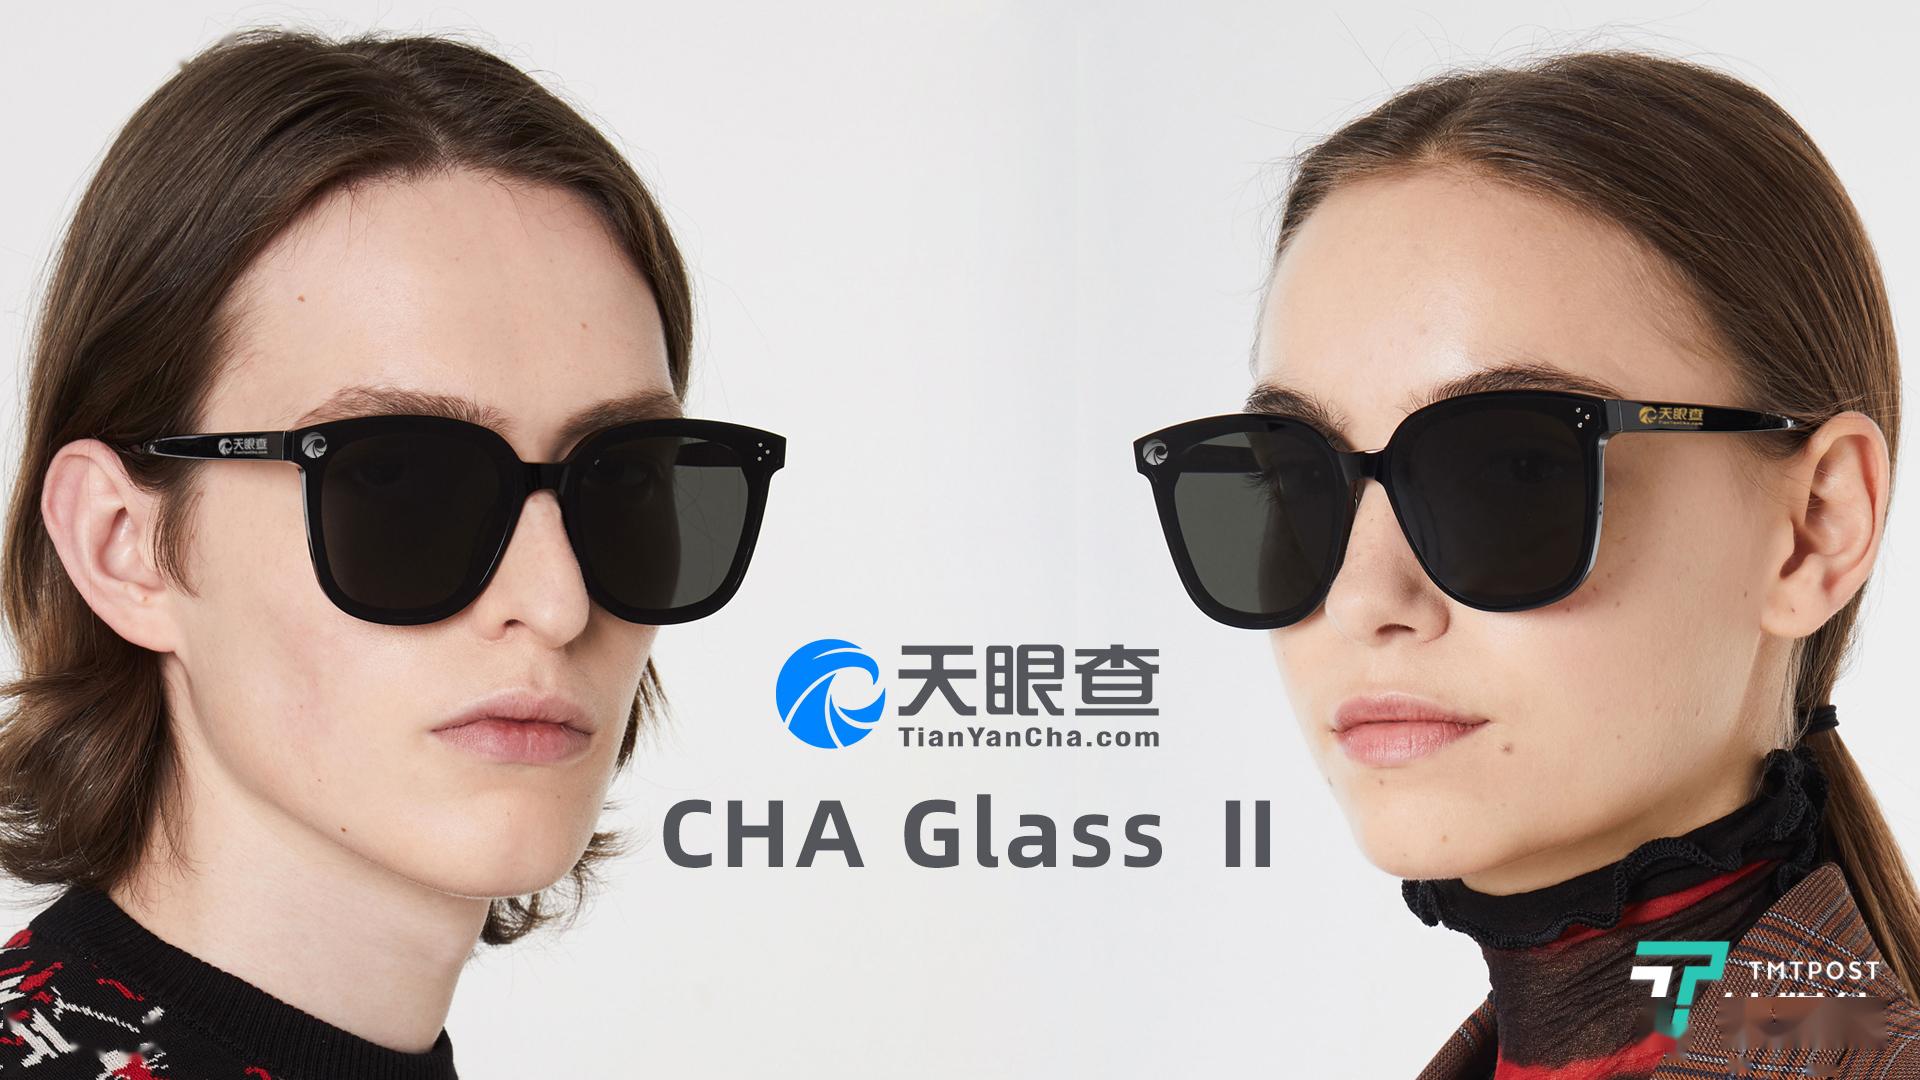 查格拉斯II可在全球销售眼聚焦和耳骨传导技术首次应用于大规模生产